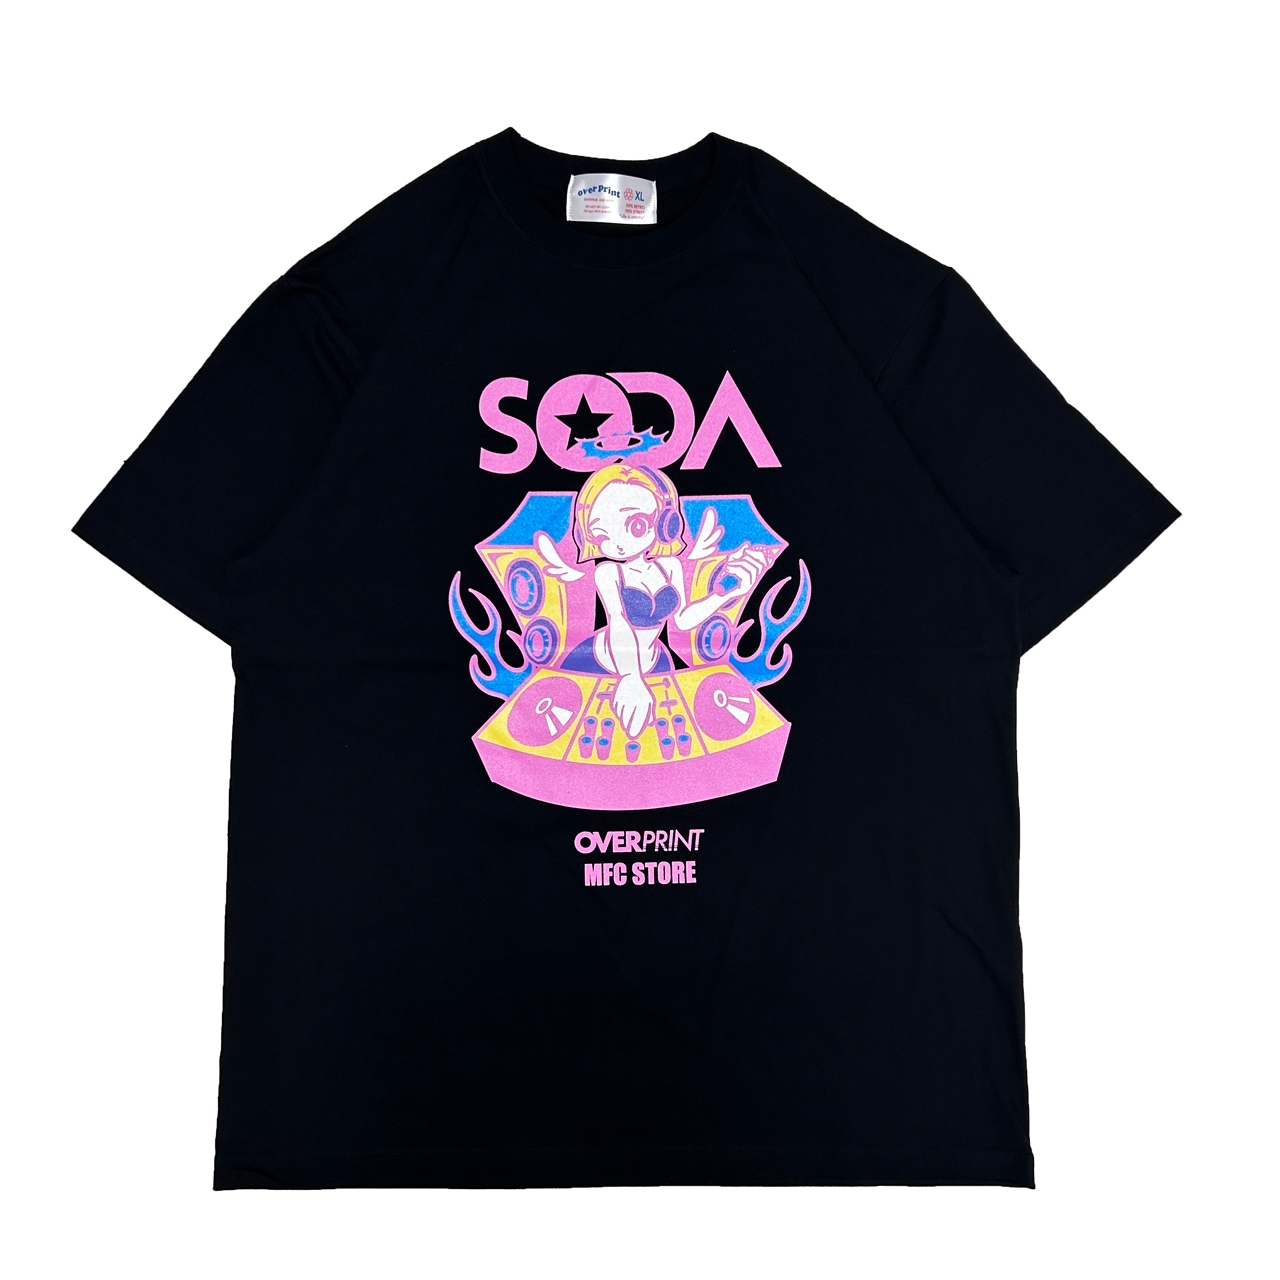 9,072円over print x DJ SODA x mfc store